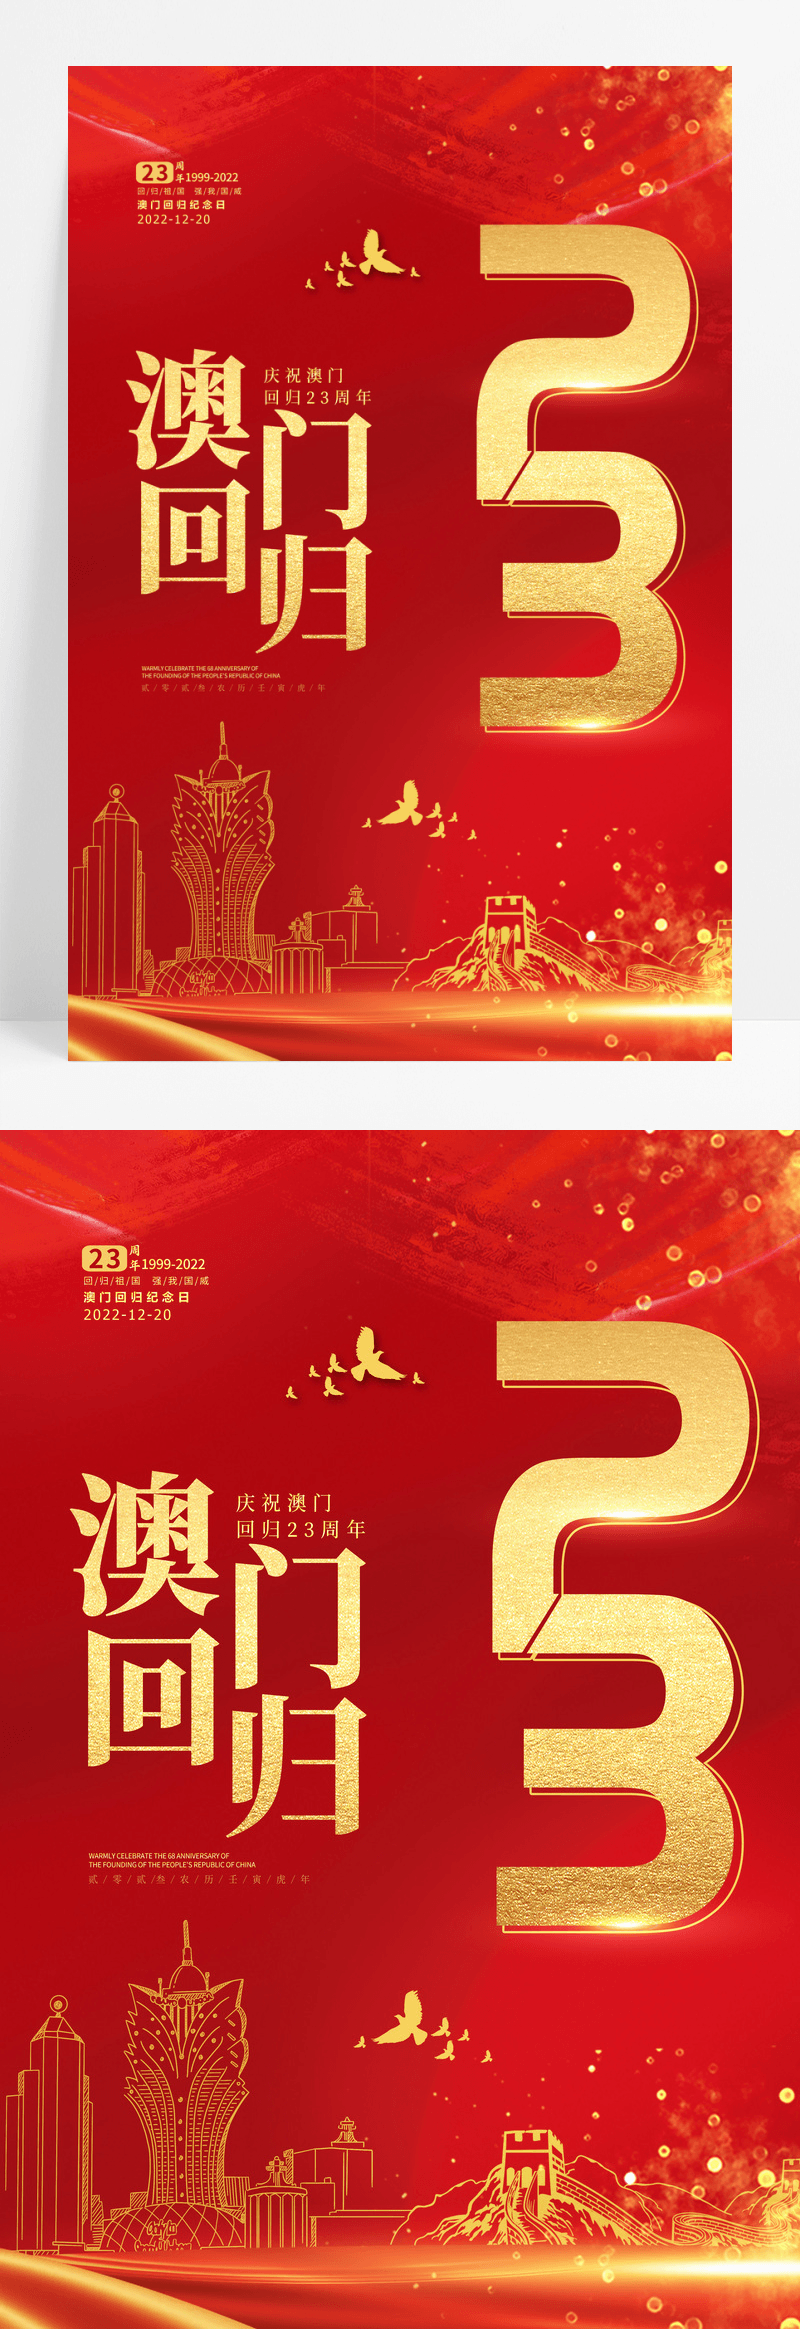 红金喜庆中国风庆祝澳门回归23周年纪念日海报